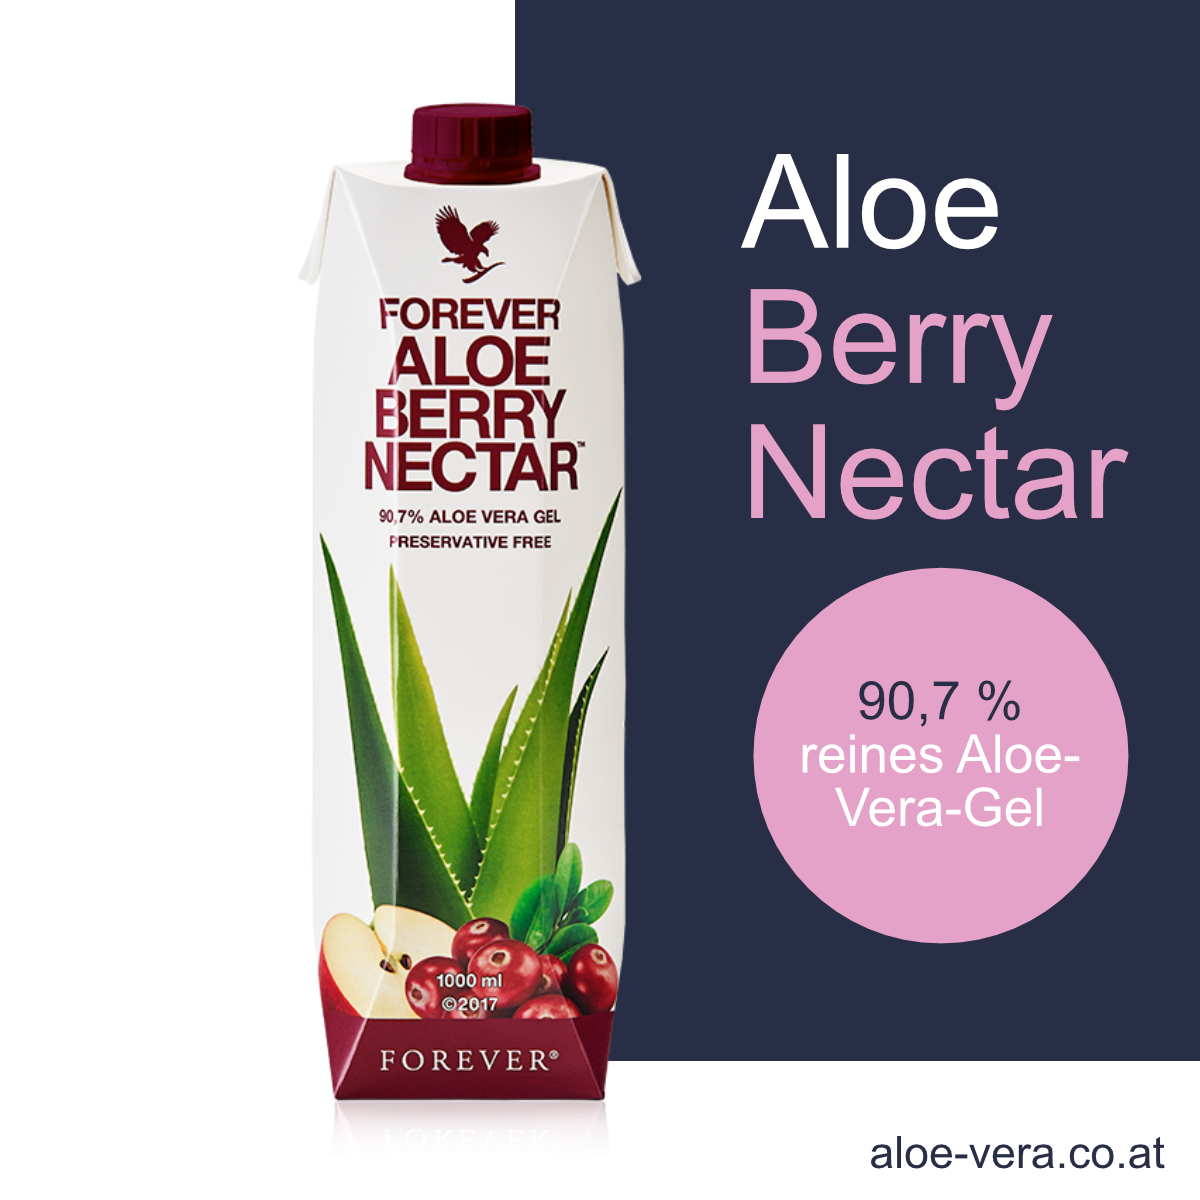 Forever Aloe Berry